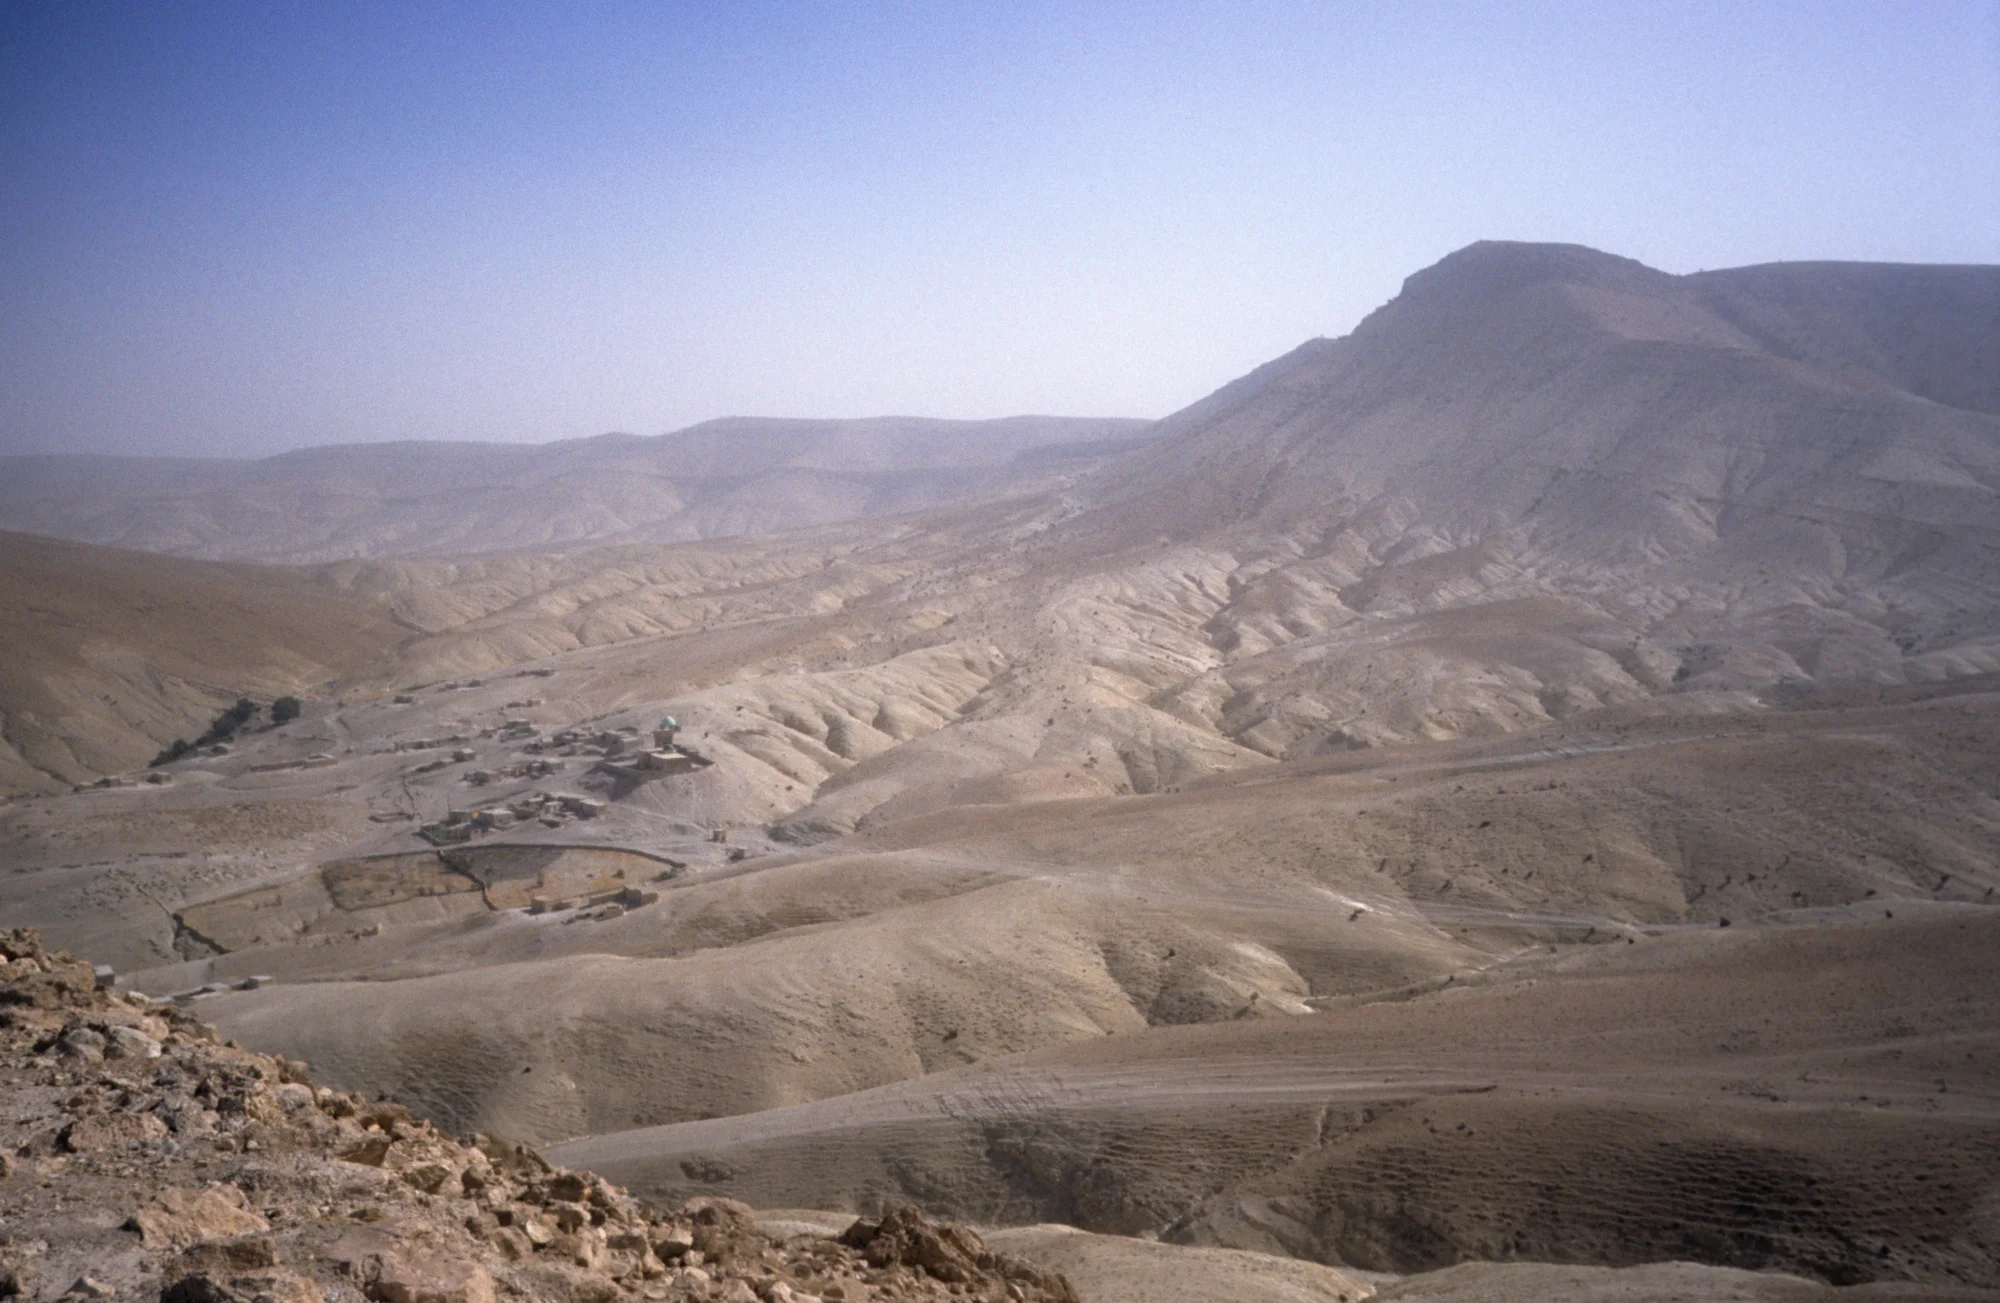 Blick auf den Höhenzug ʿAbd al-ʿAziz mit dem Dorf Al-Ghara, wo sich der Schrein von Shaykh ʿAbd al-ʿAziz befindet